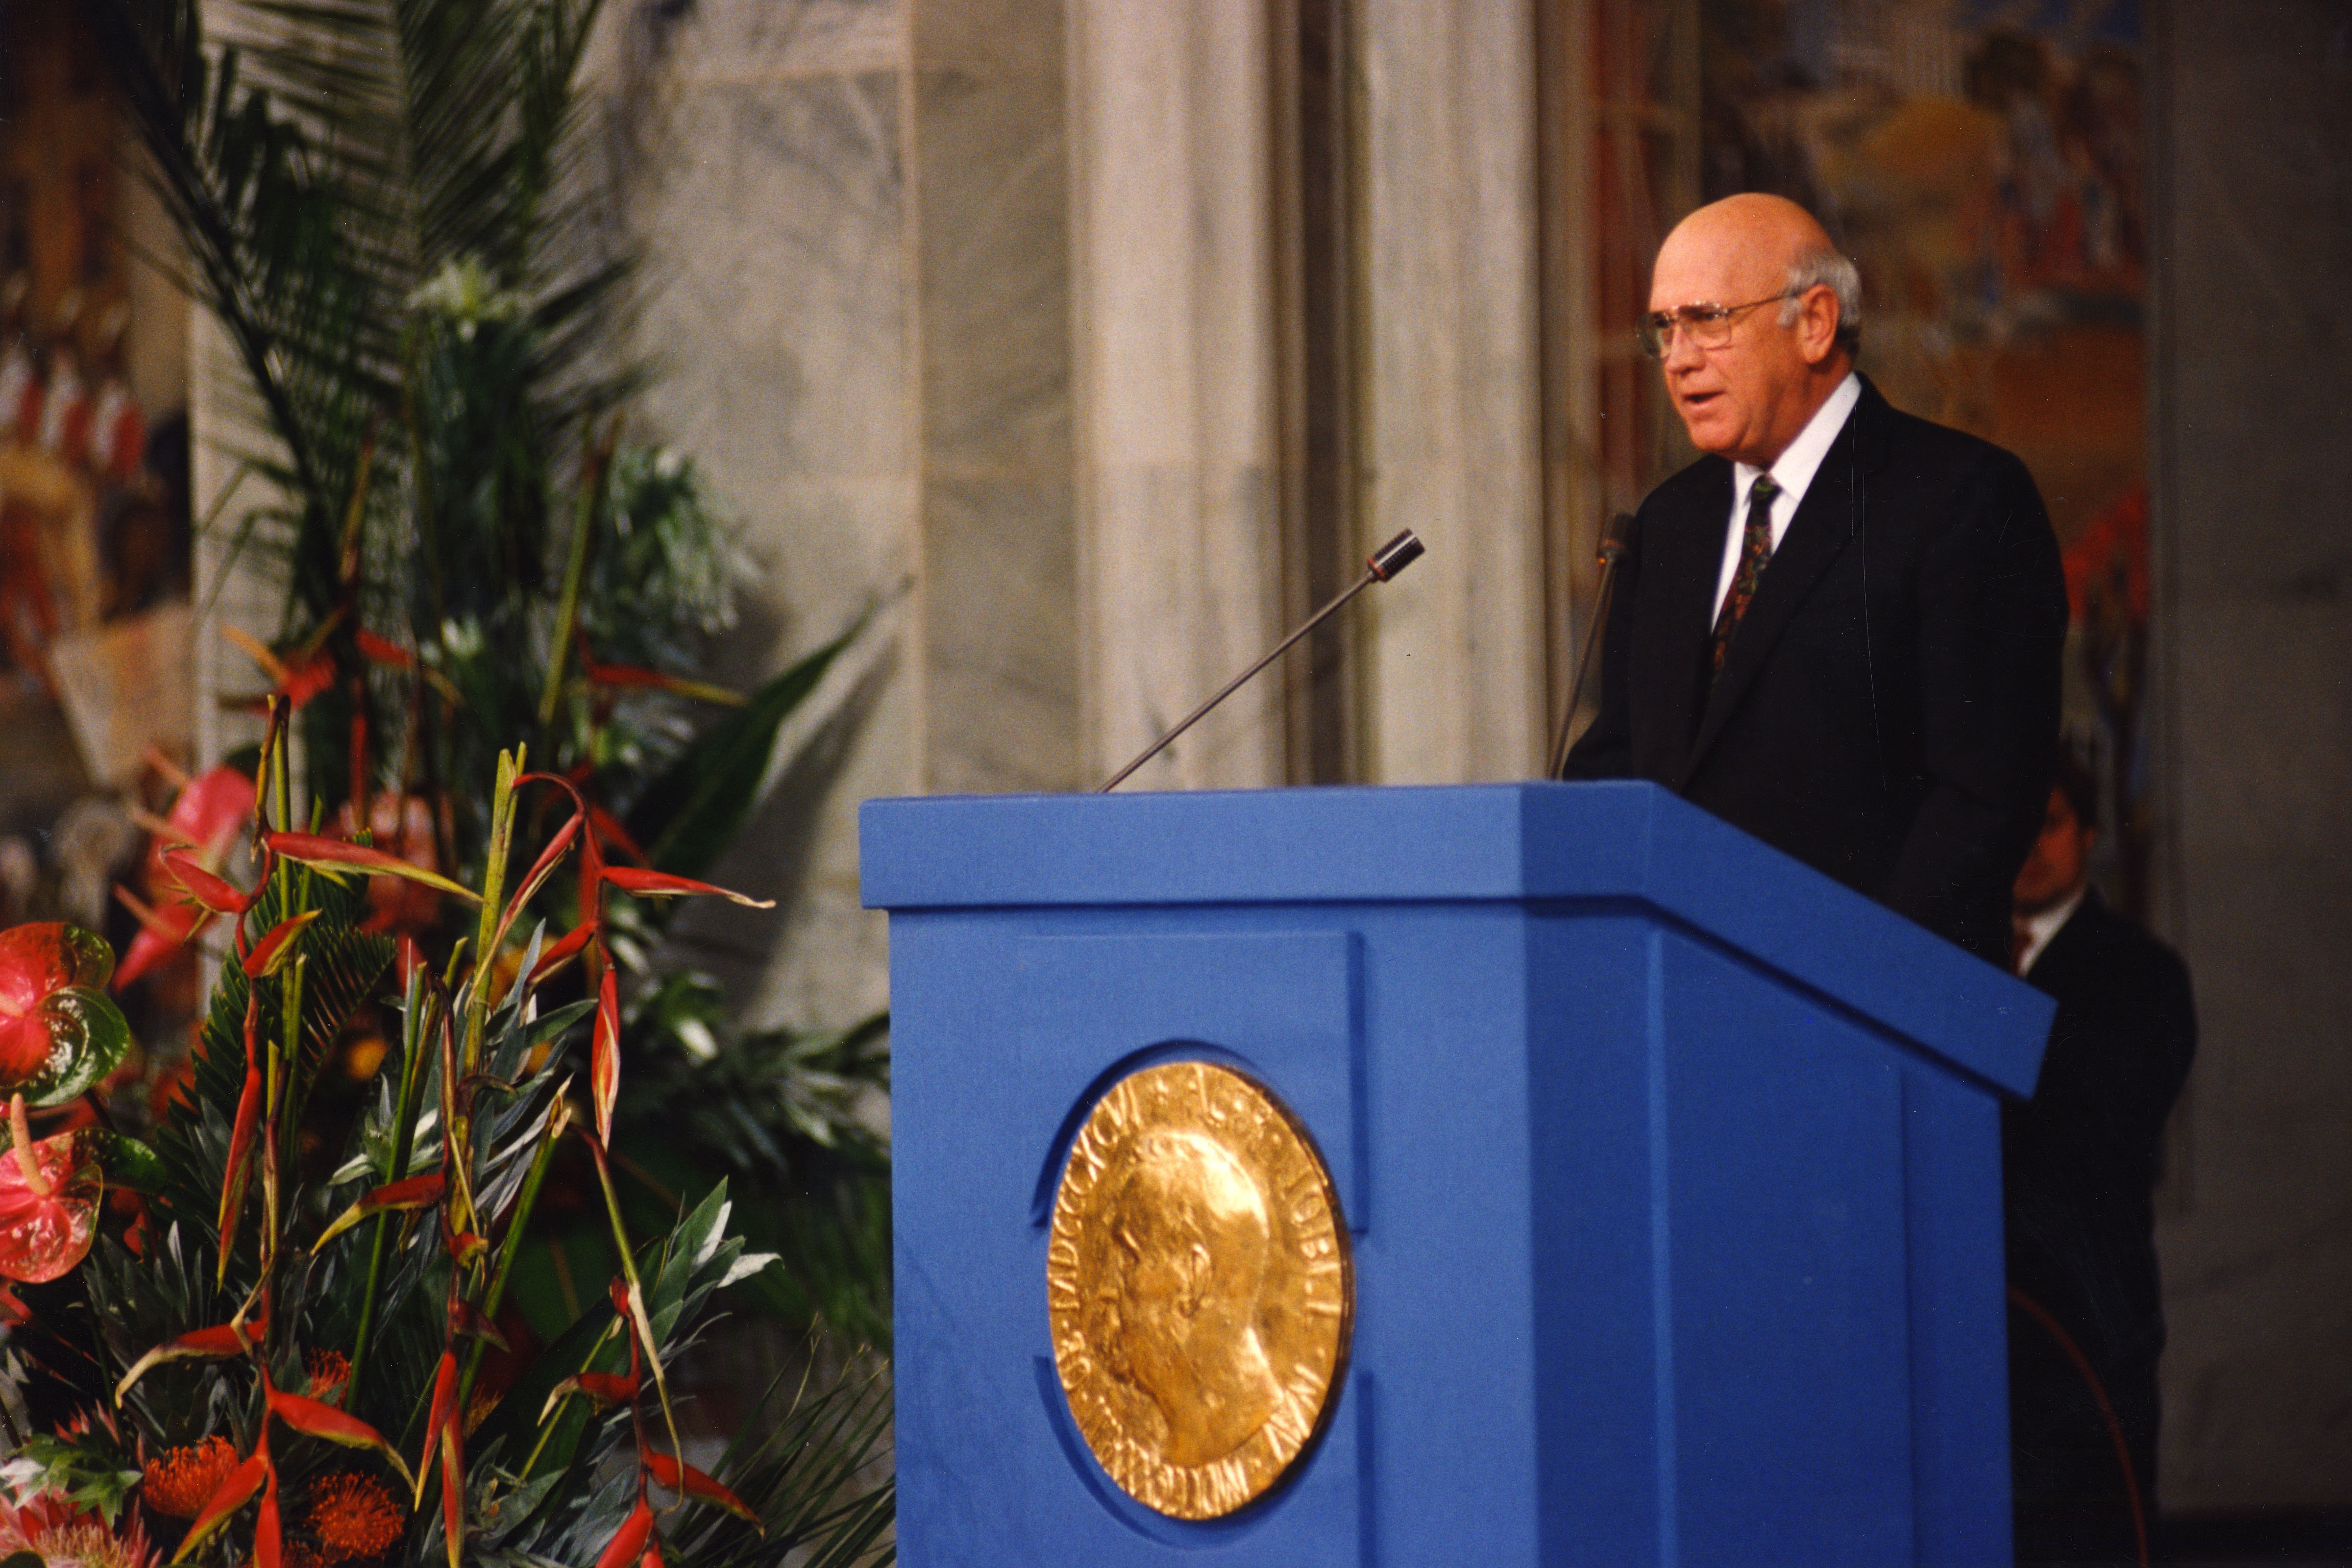 FW de Klerk receives the Nobel Peace Prize in 1993